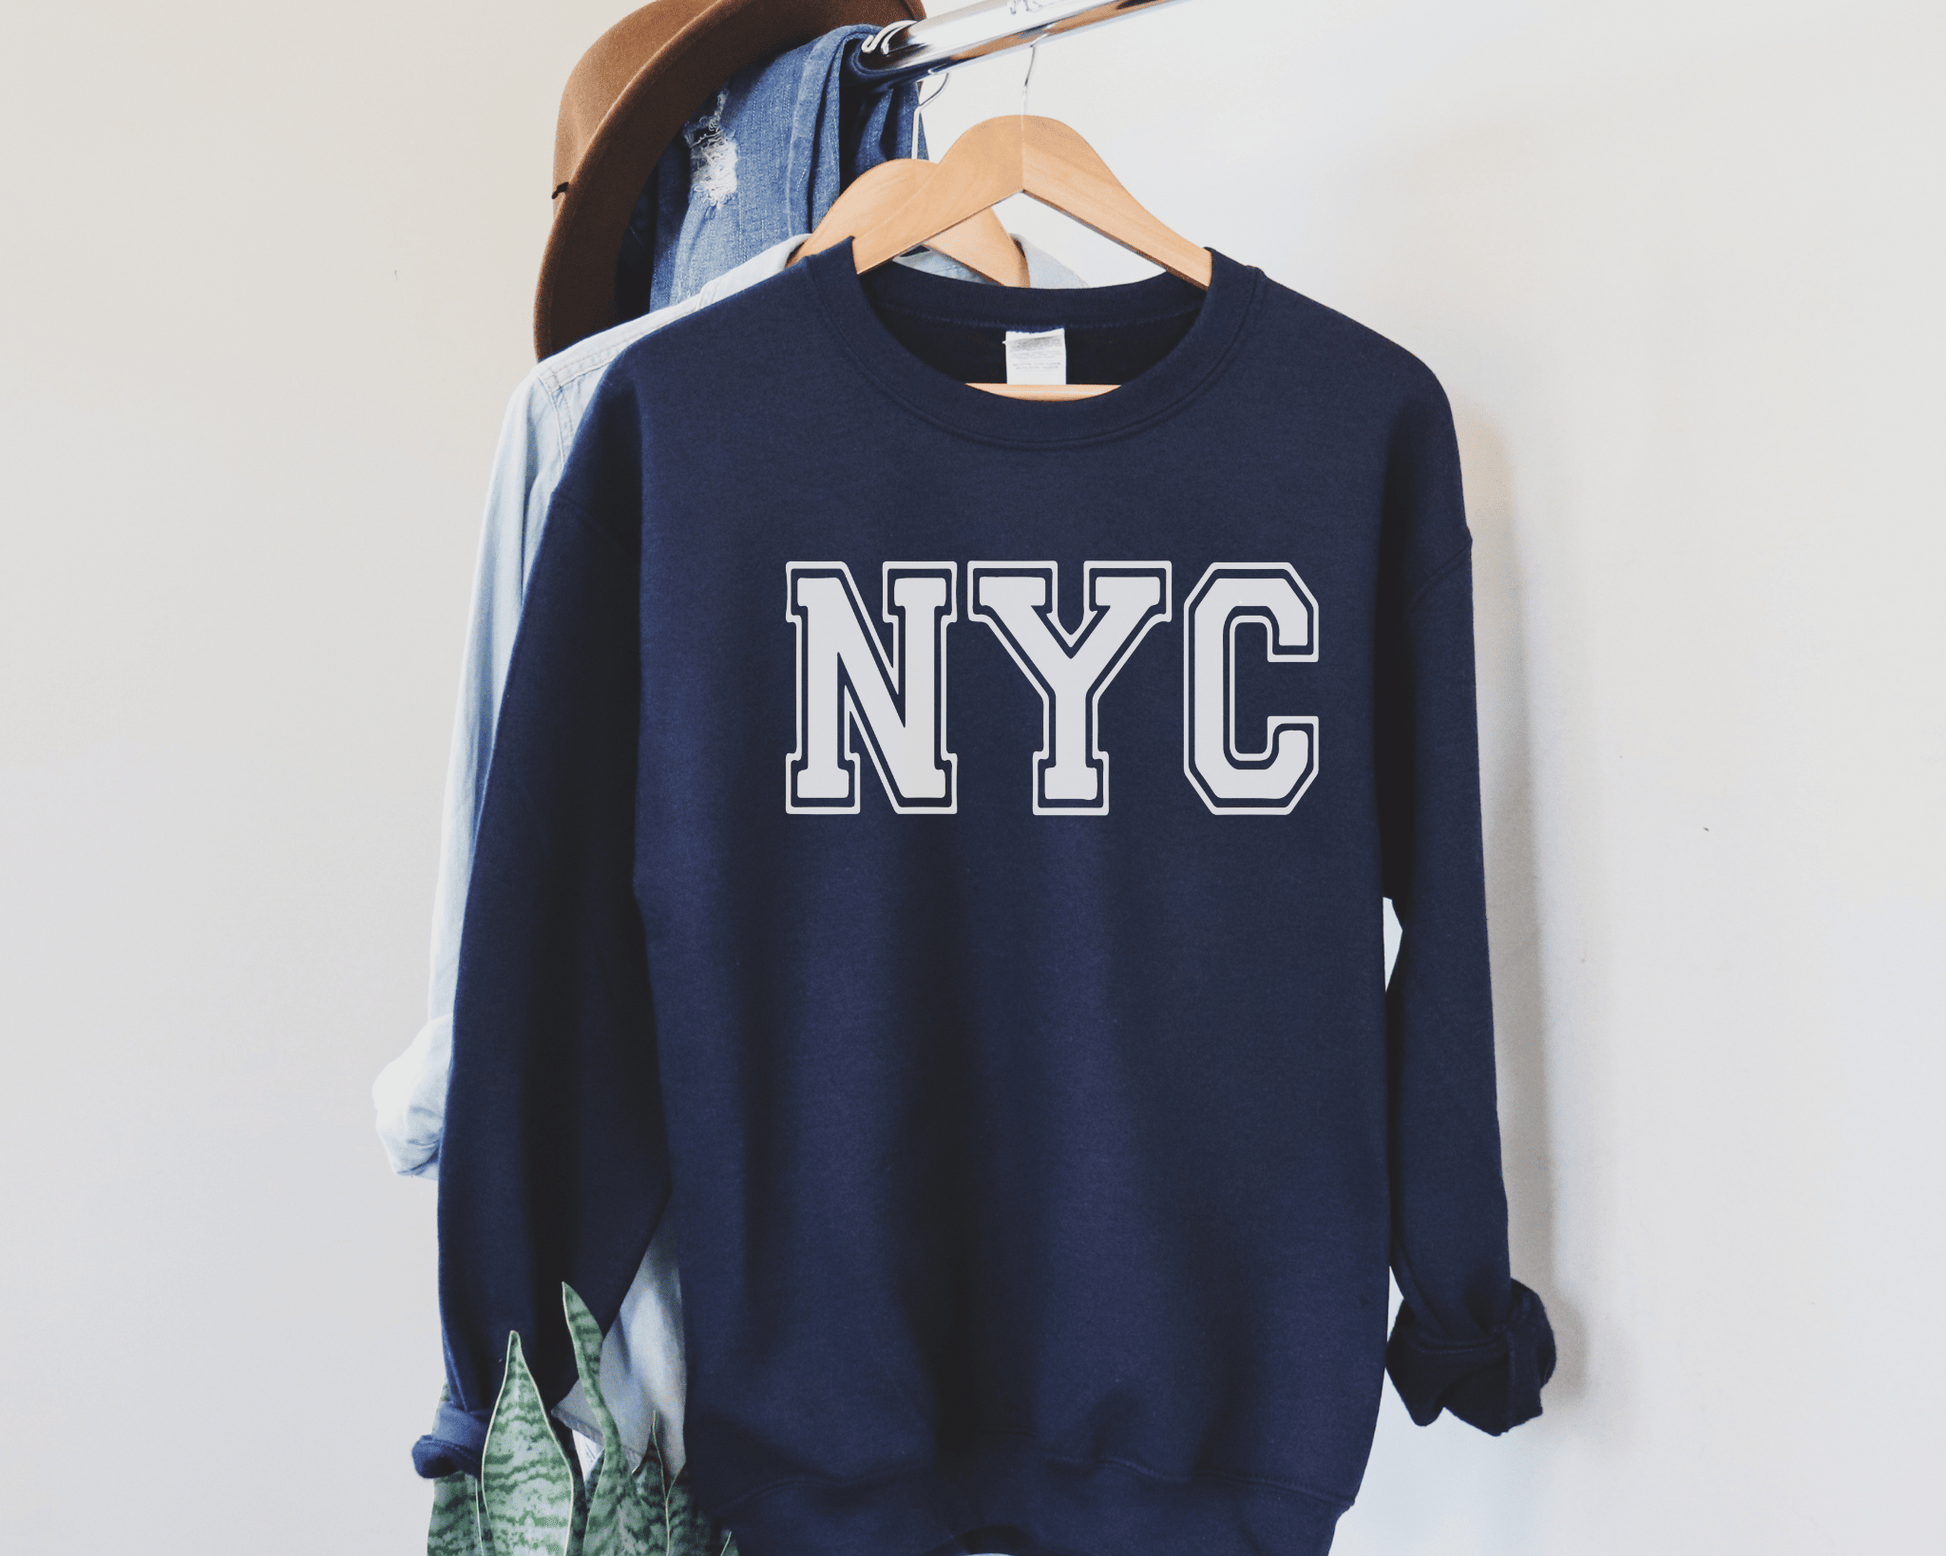 NYC Sweatshirt in Navy, hanging.